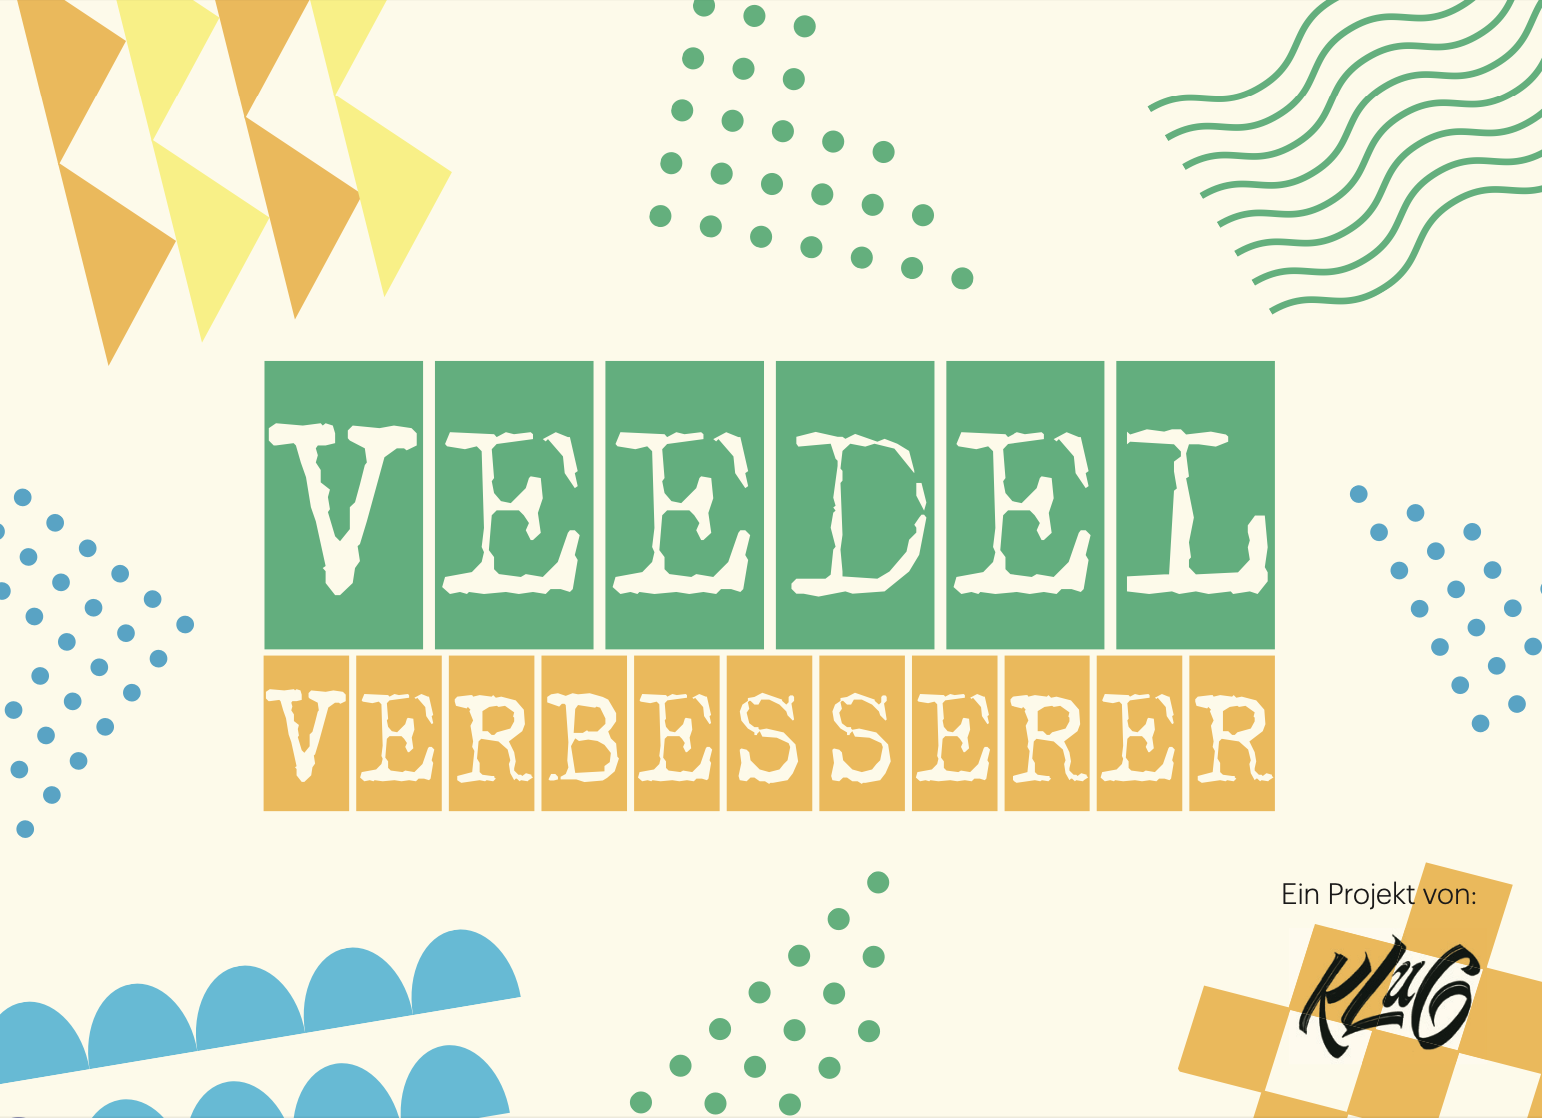 Plakat in bunten Farben mit Titel "Veedelverbesserer".